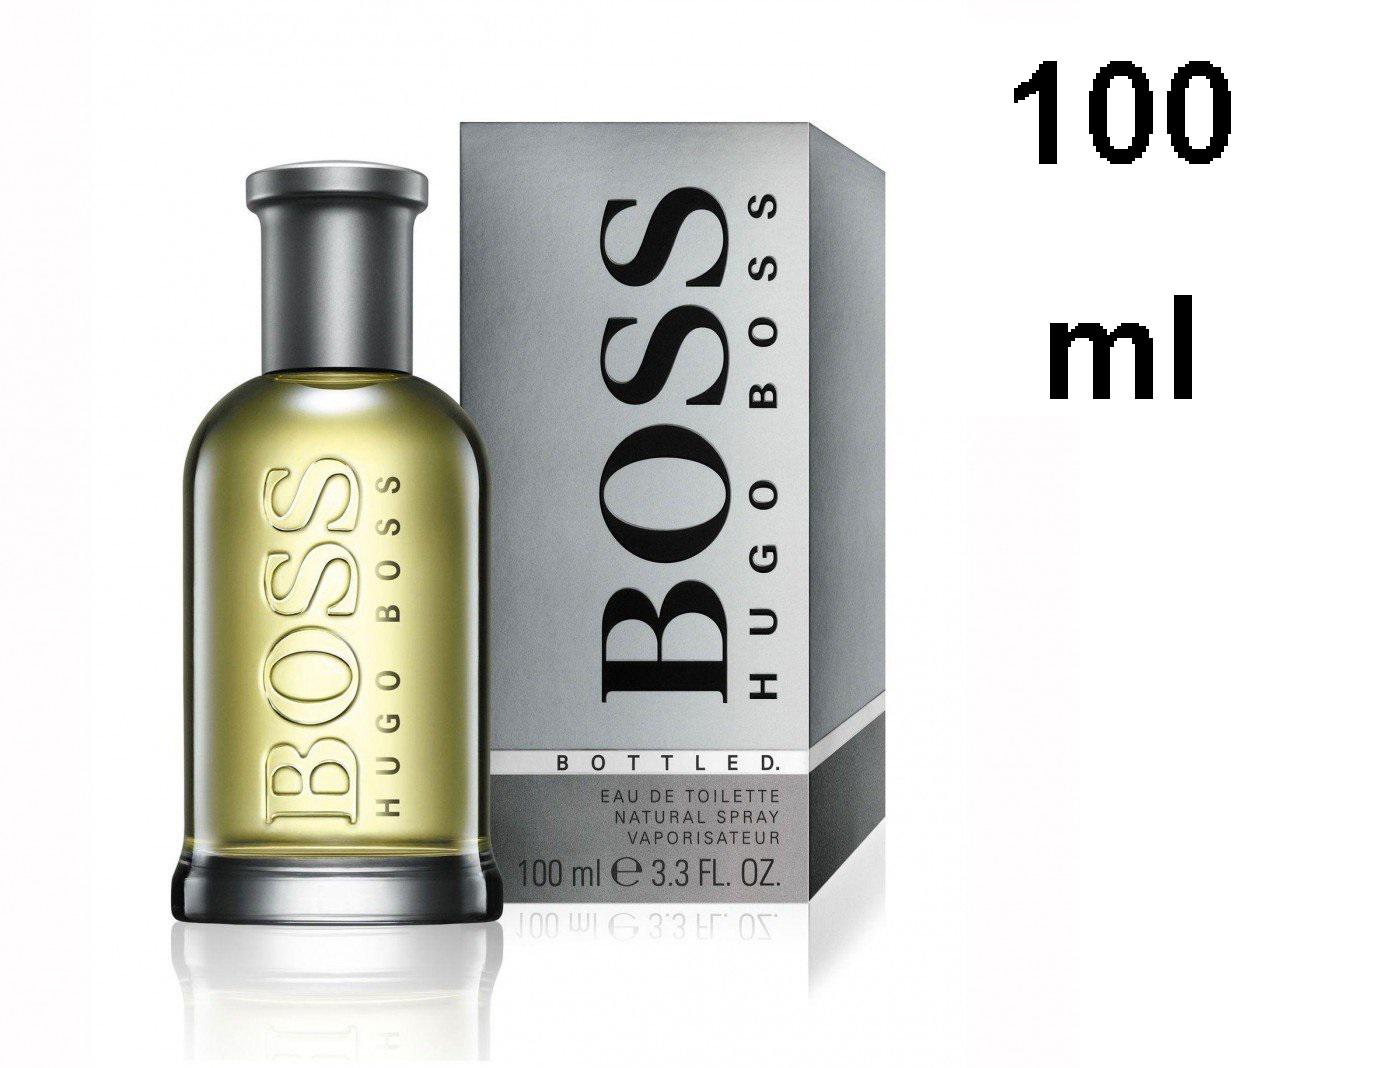 boss bottled hugo boss for men